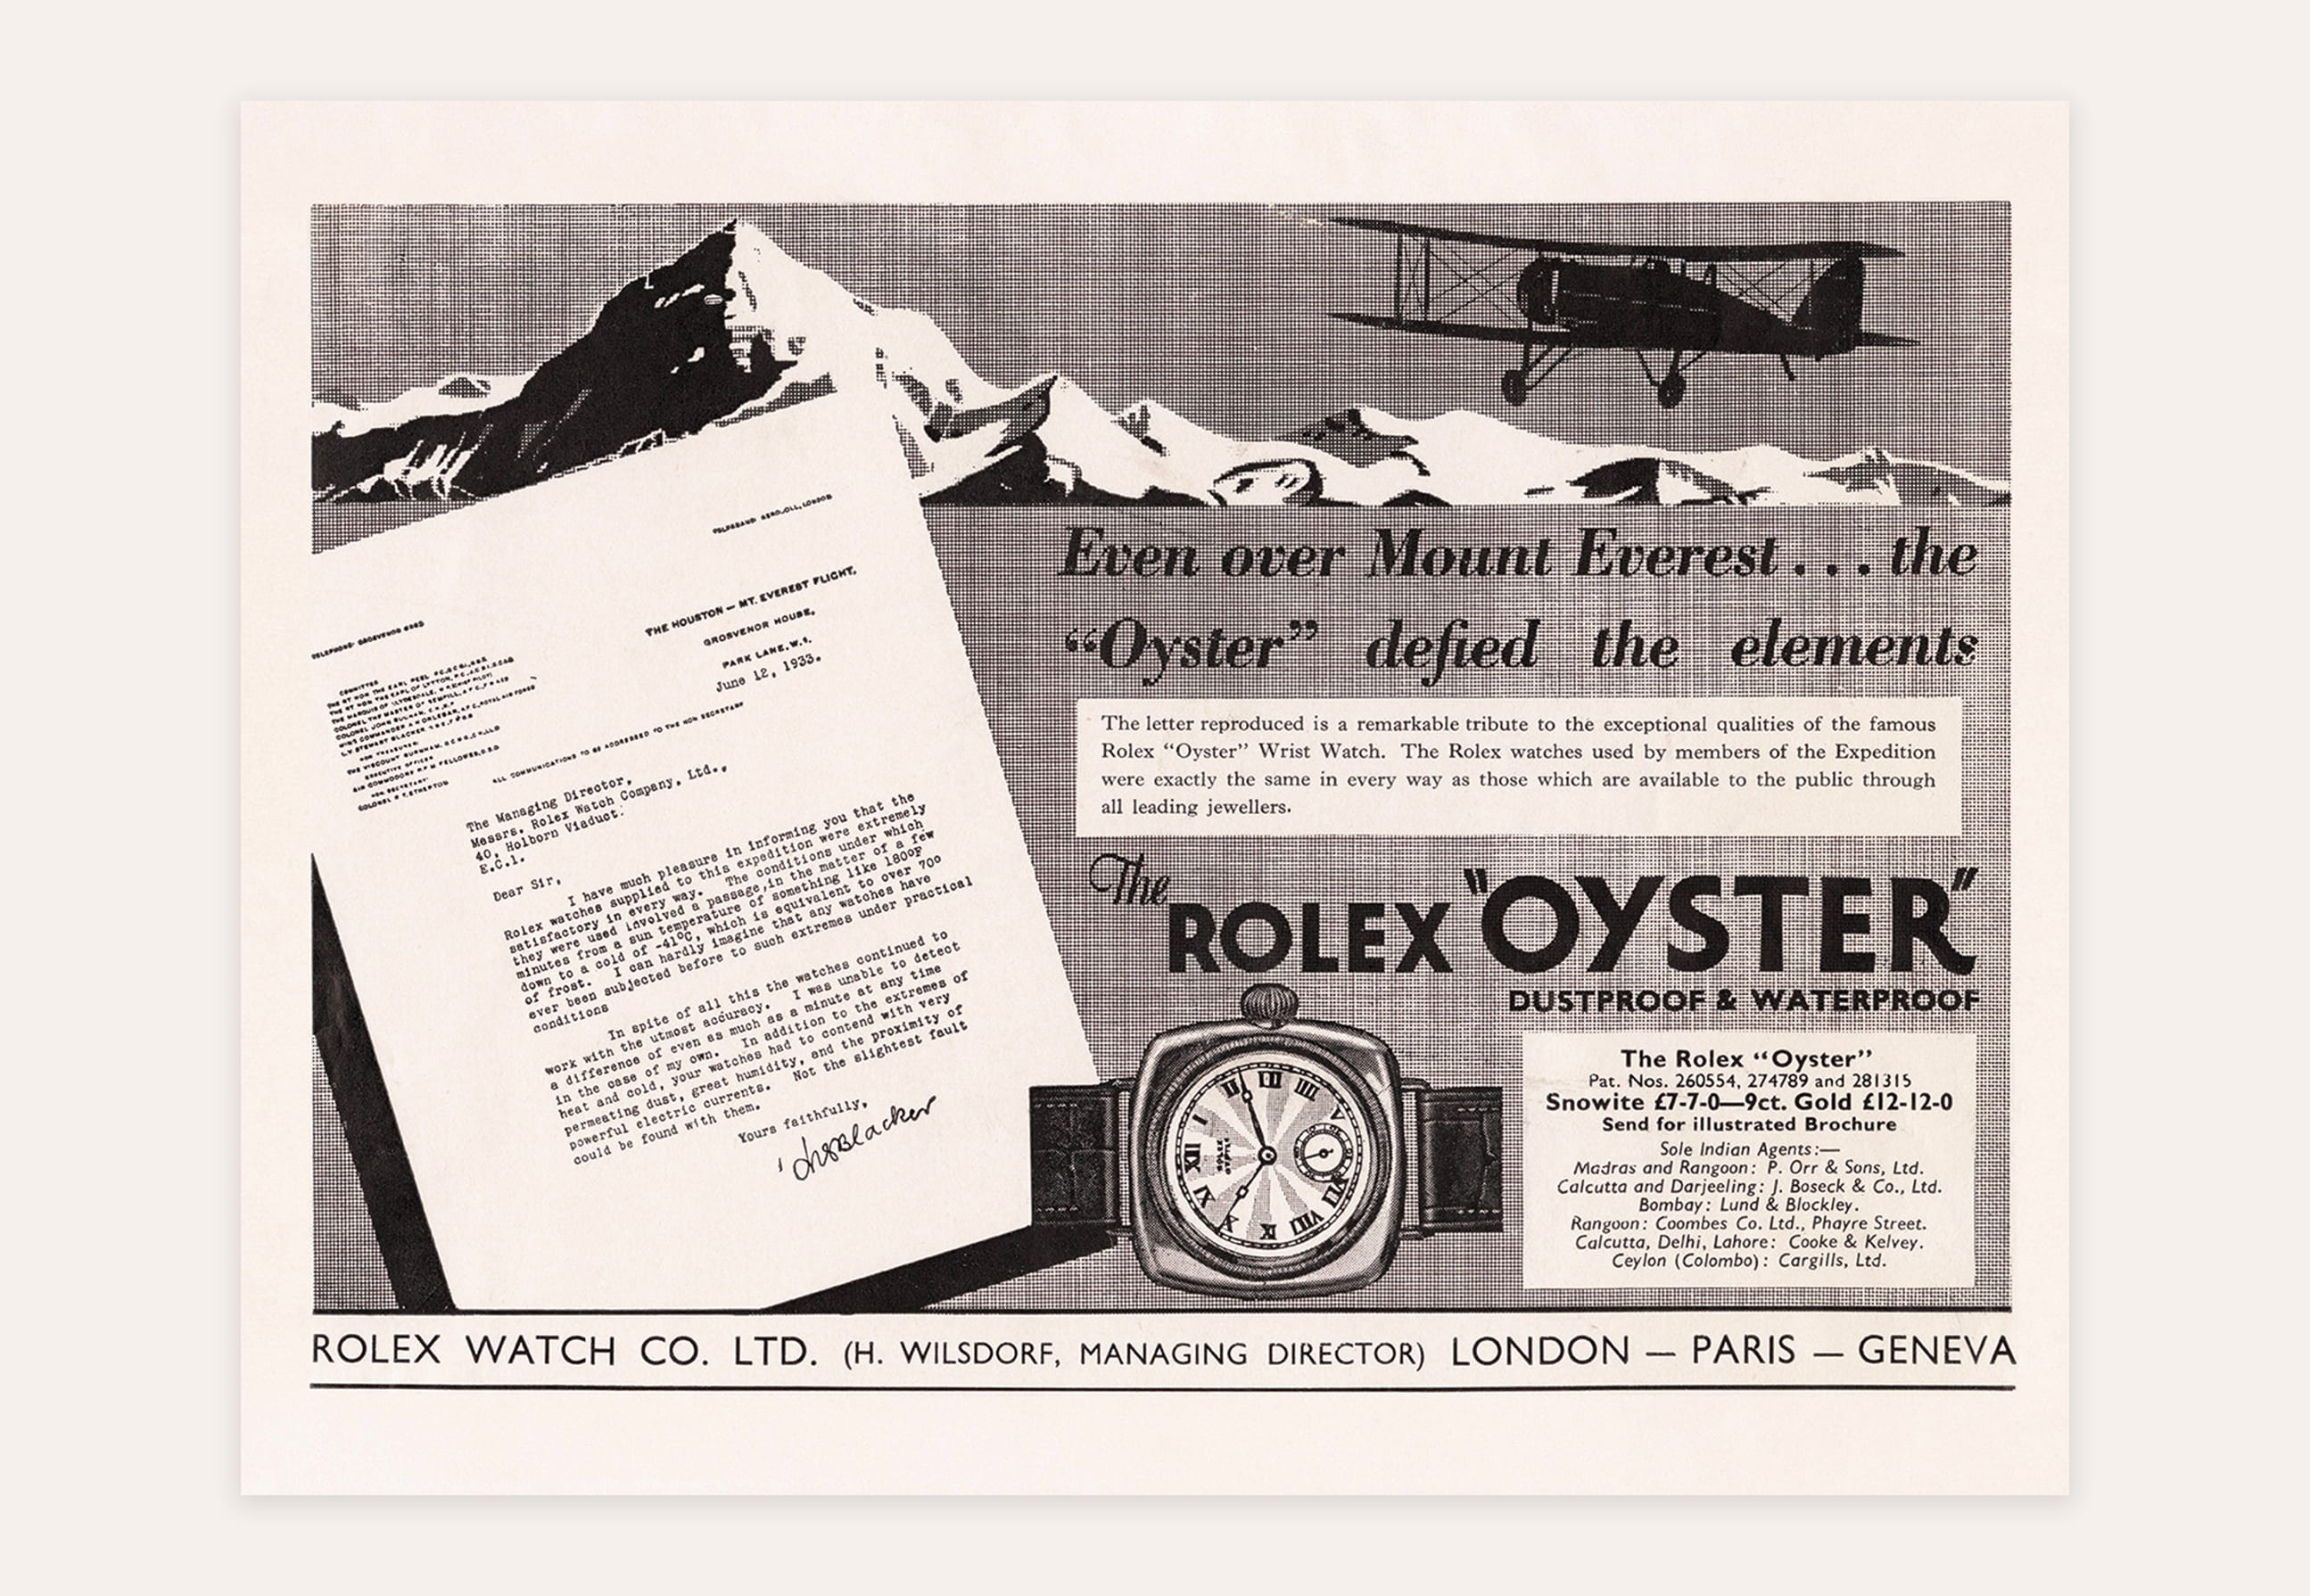 エアキングは、ロレックスが航空の世界と1930年代の黄金期に築いた特別な絆を象徴している。この時計は、当時の<wbr>パイロットたちと、壮大な飛行史においてオイスターが果たした役割へのオマージュである。1930年代は、飛行機の<wbr>性能が飛躍的な発展を遂げ、長距離飛行が始まった時代だった。オイスターを着用して記録を打ち立てた<wbr>パイロットや、また、1934年にオーウェン・カスカート・ジョーンズとケン・ウォーラーが、双発飛行機のデ・<wbr>ハビランド・コメットでロンドン（英国）とメルボルン（オーストラリア）間を記録的短時間で飛行した<wbr>ときのように、ロレックス ウォッチを機上でクロノメーターとして使用したパイロットもいた。